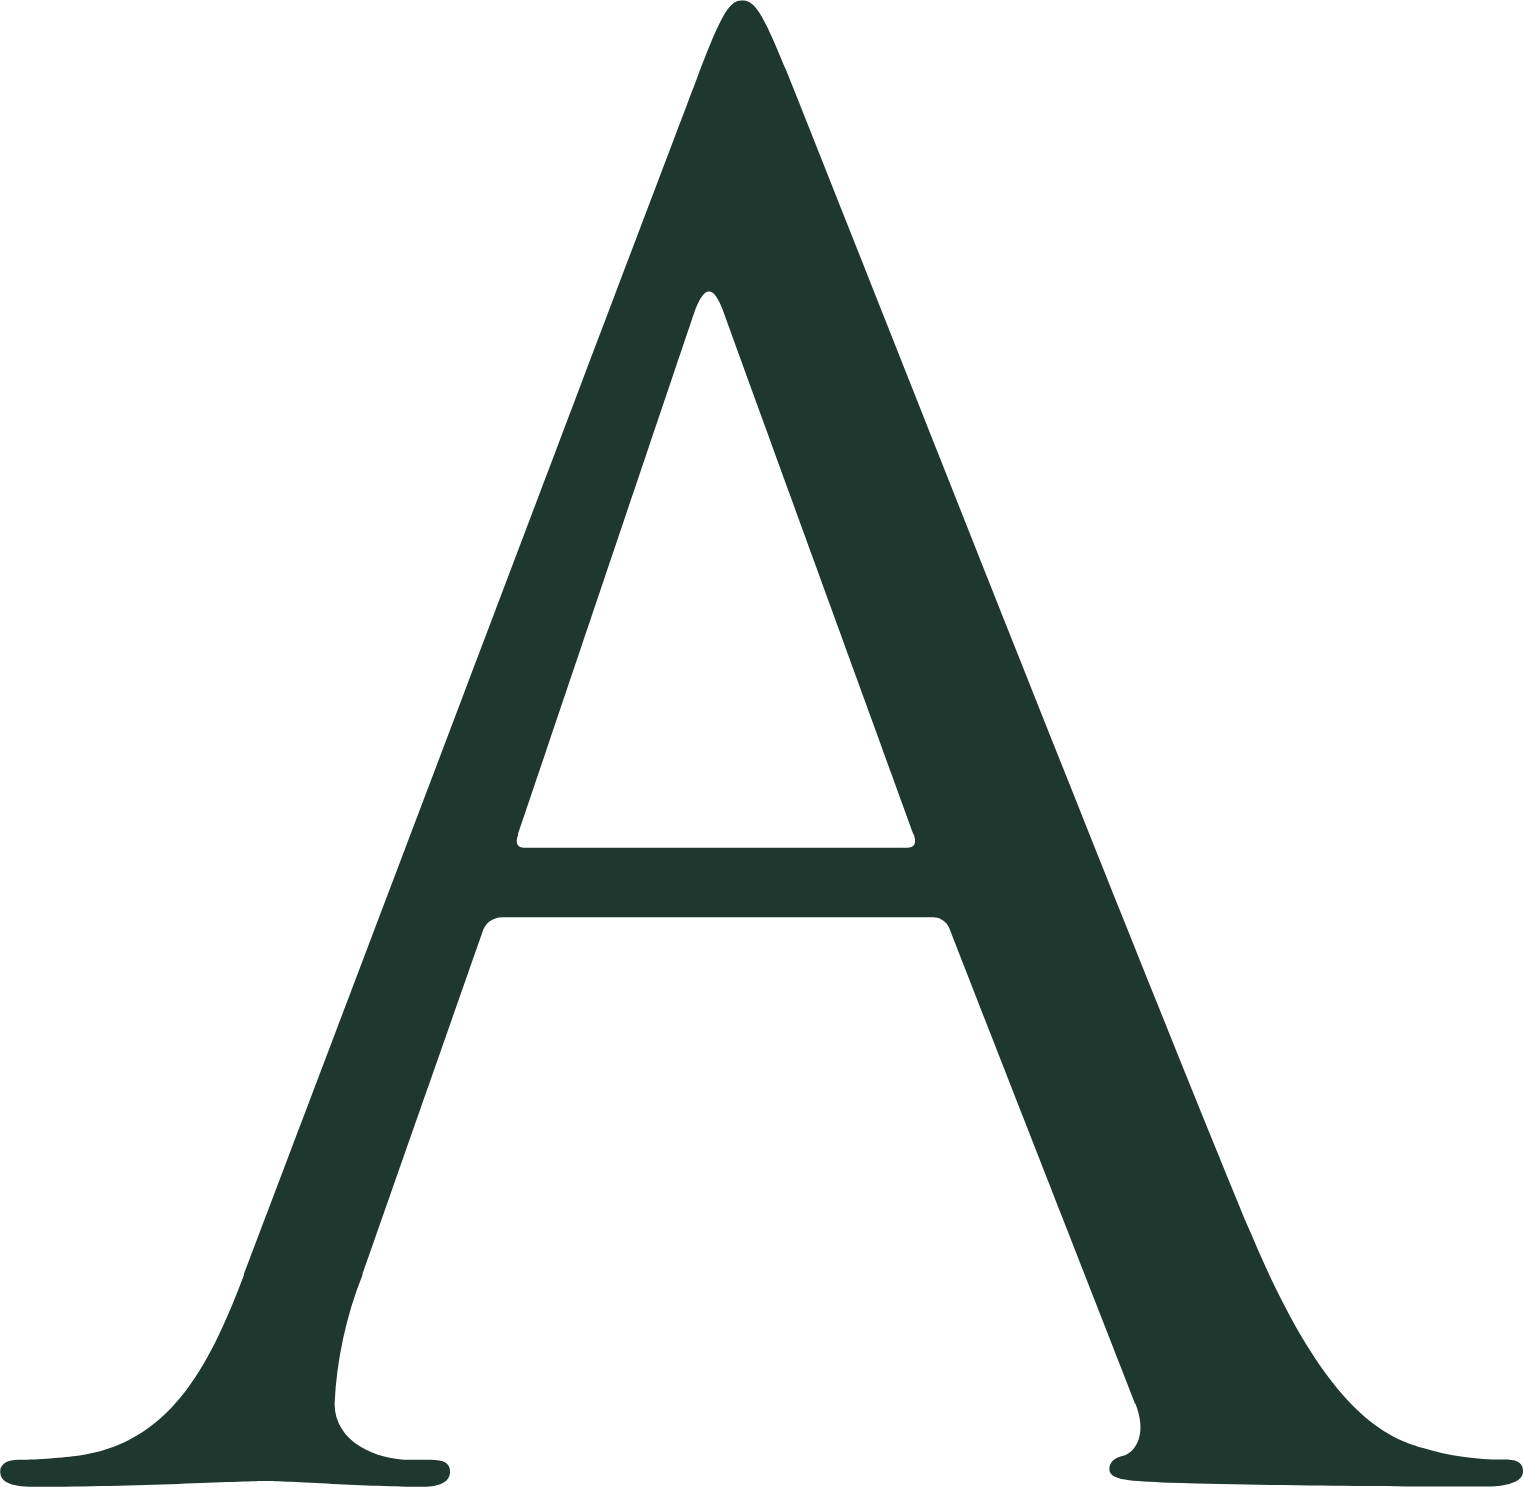 Arhaus logo (PNG transparent)